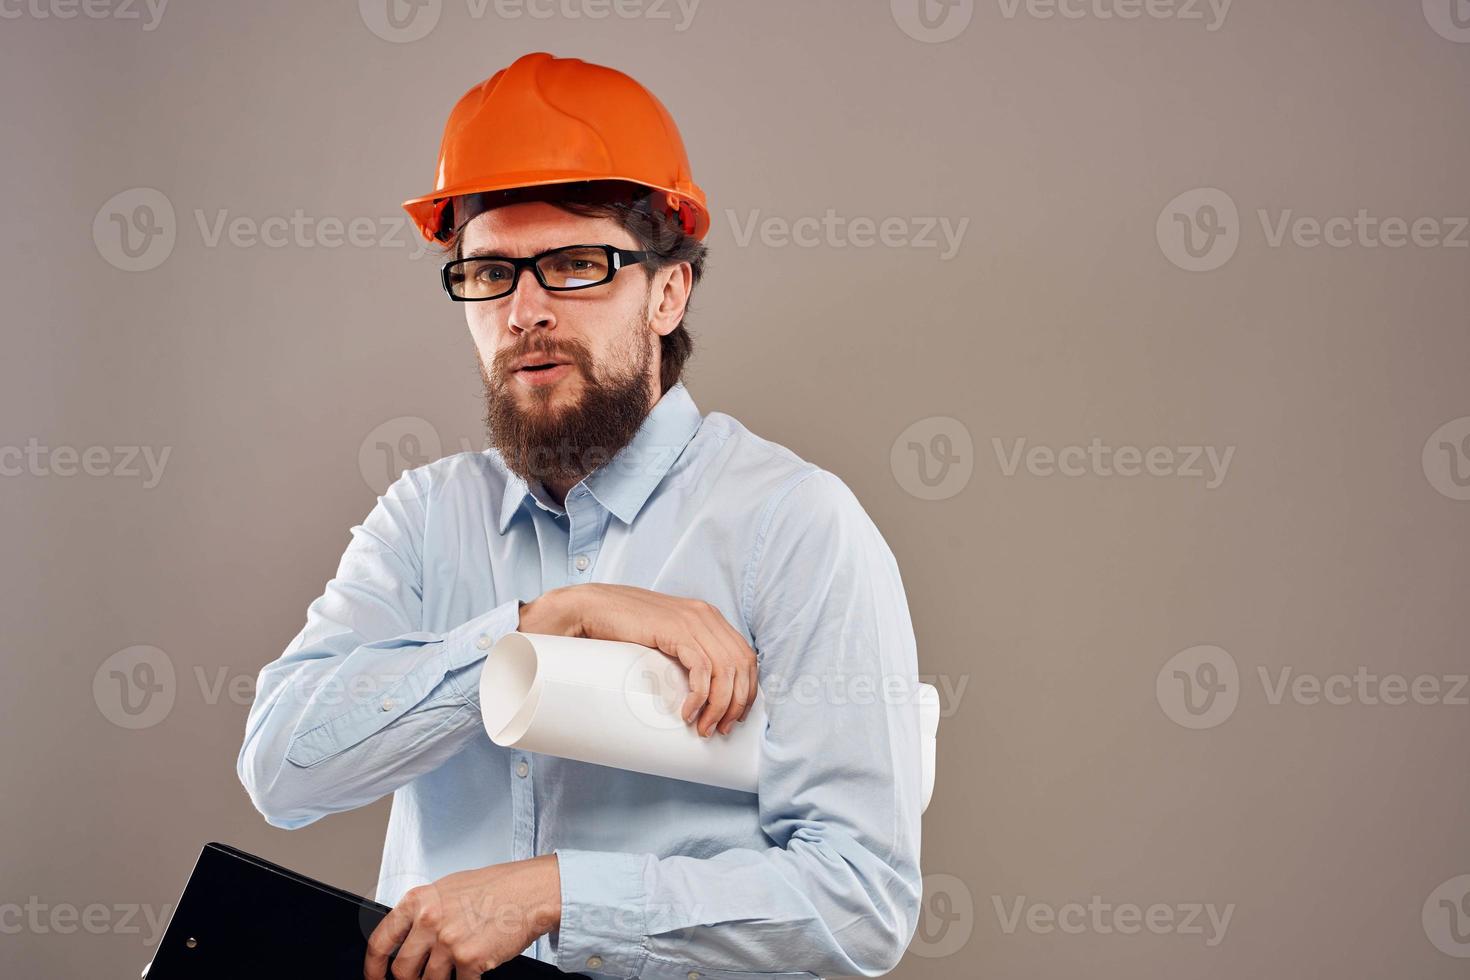 homme dans construction uniforme Orange casque dessins les documents travail prestations de service photo